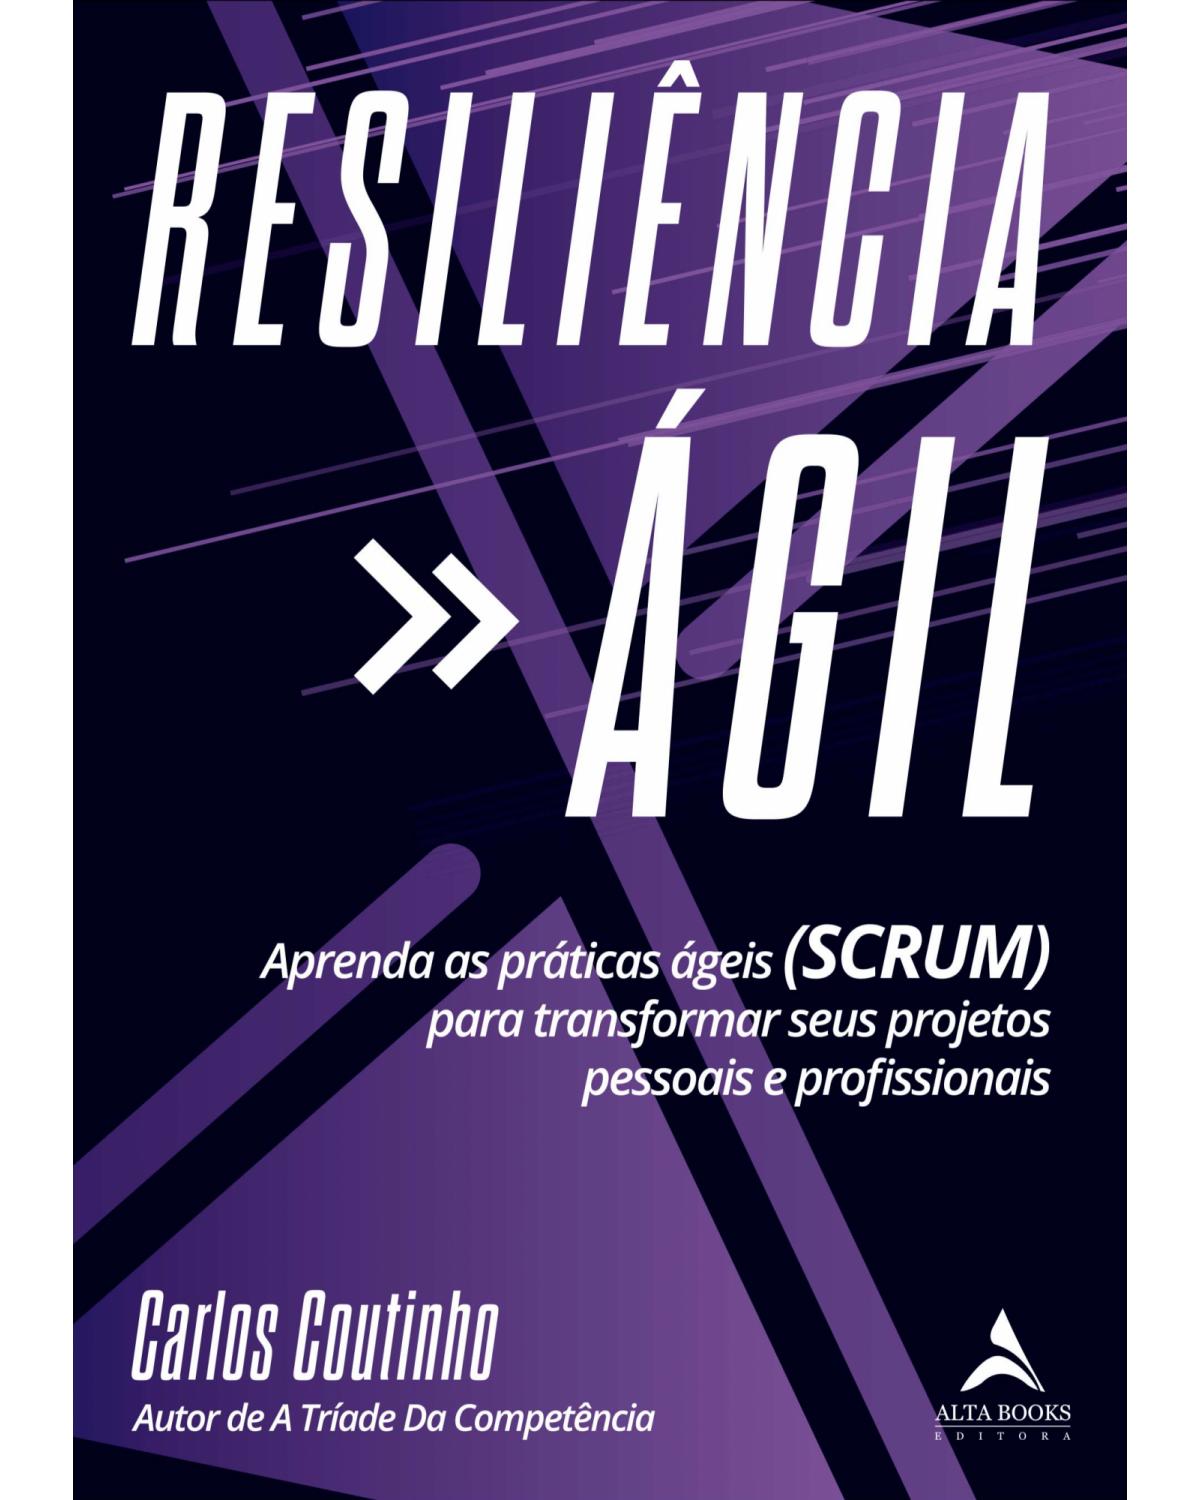 Resiliencia ágil - Aprenda As Práticas Ágeis (SCRUM) para transformar seus projetos pessoais e profissionais - 1ª Edição | 2021